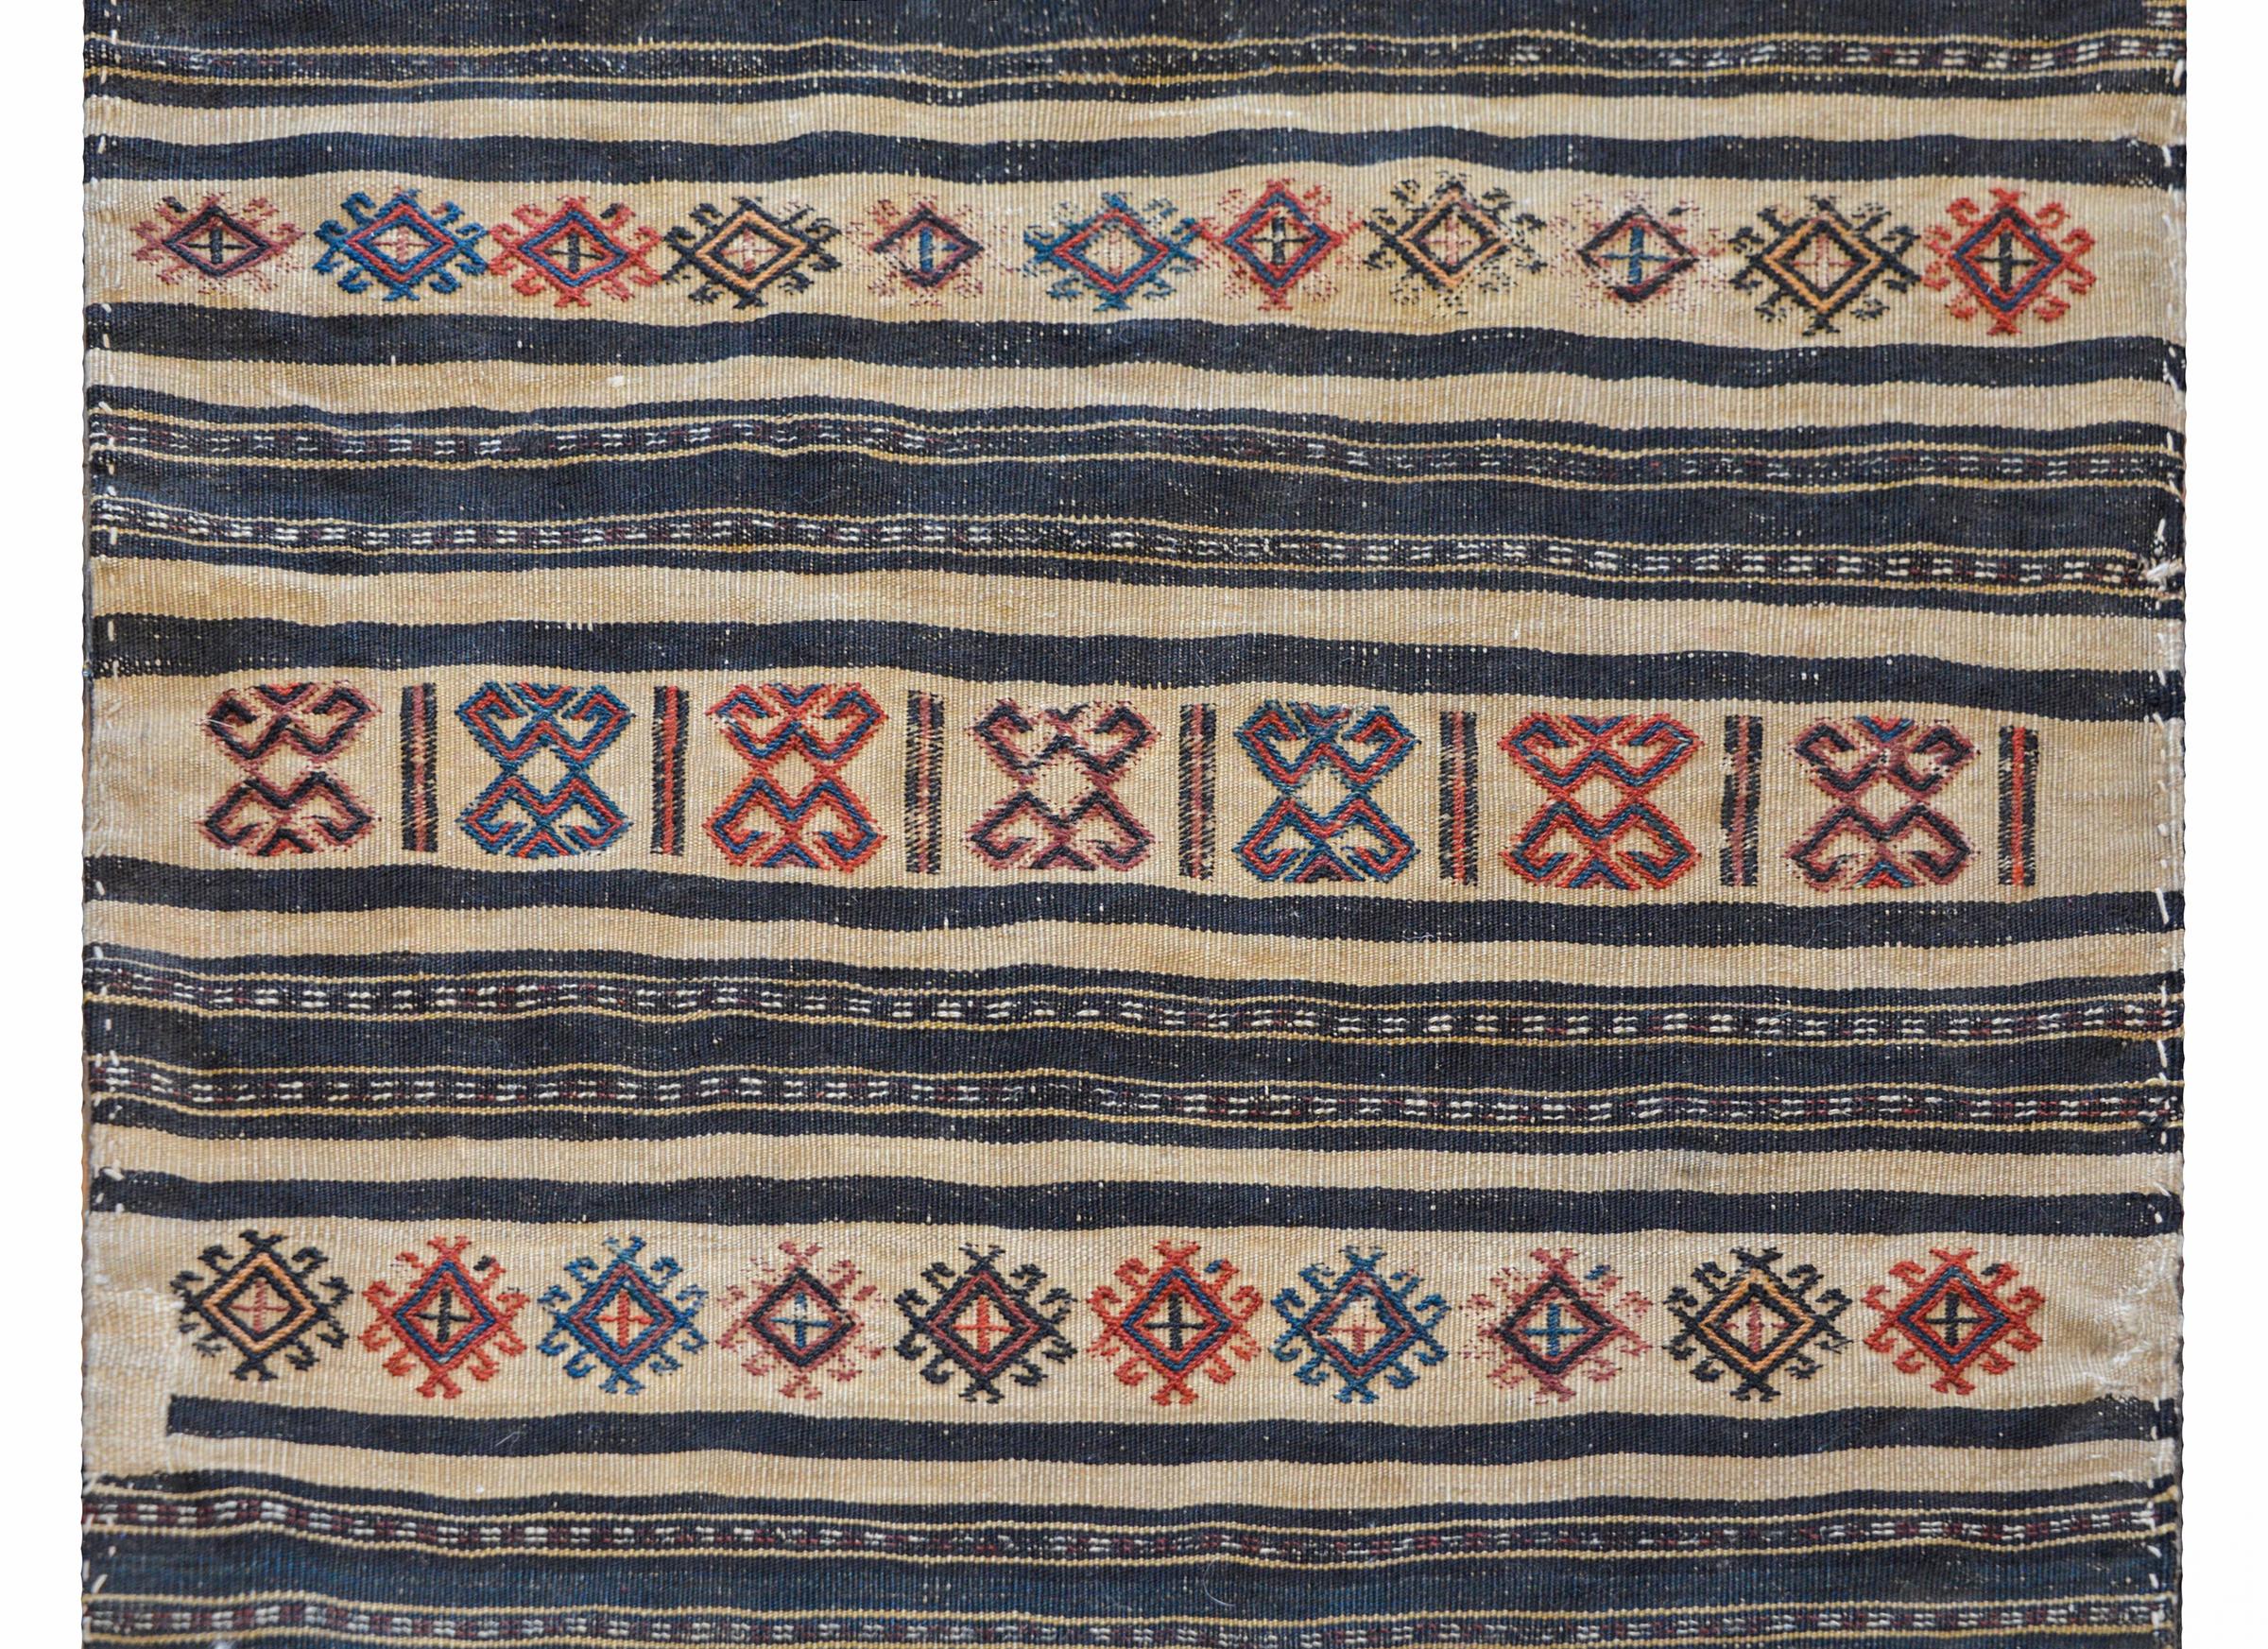 Magnifique tapis persan du début du XXe siècle, de type Afshar Grain bag face, avec un merveilleux motif rayé contenant des bandes tissées unies de couleur indigo, agrémentées de motifs brodés de couleur cramoisie, or, et indigo clair et foncé.